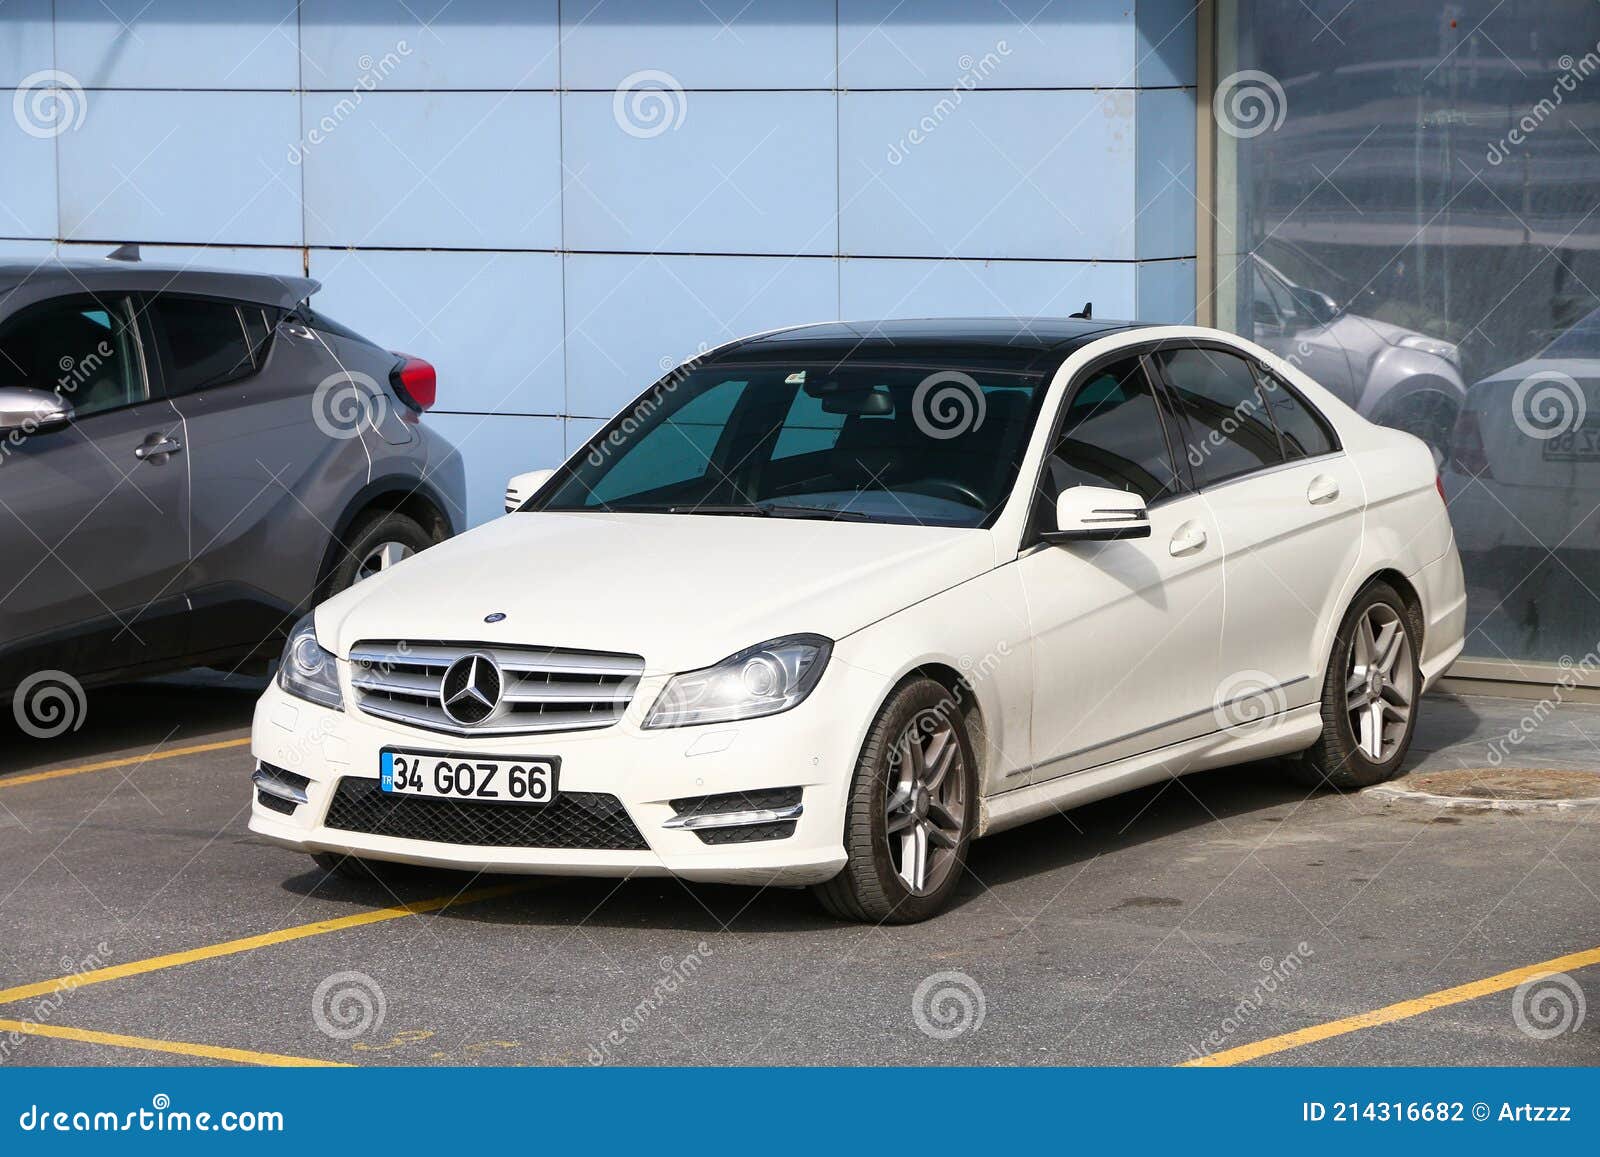 Kiev, Ukraine - May 22, 2021: White Mercedes-Benz C Class W204 in the city  Stock Photo - Alamy